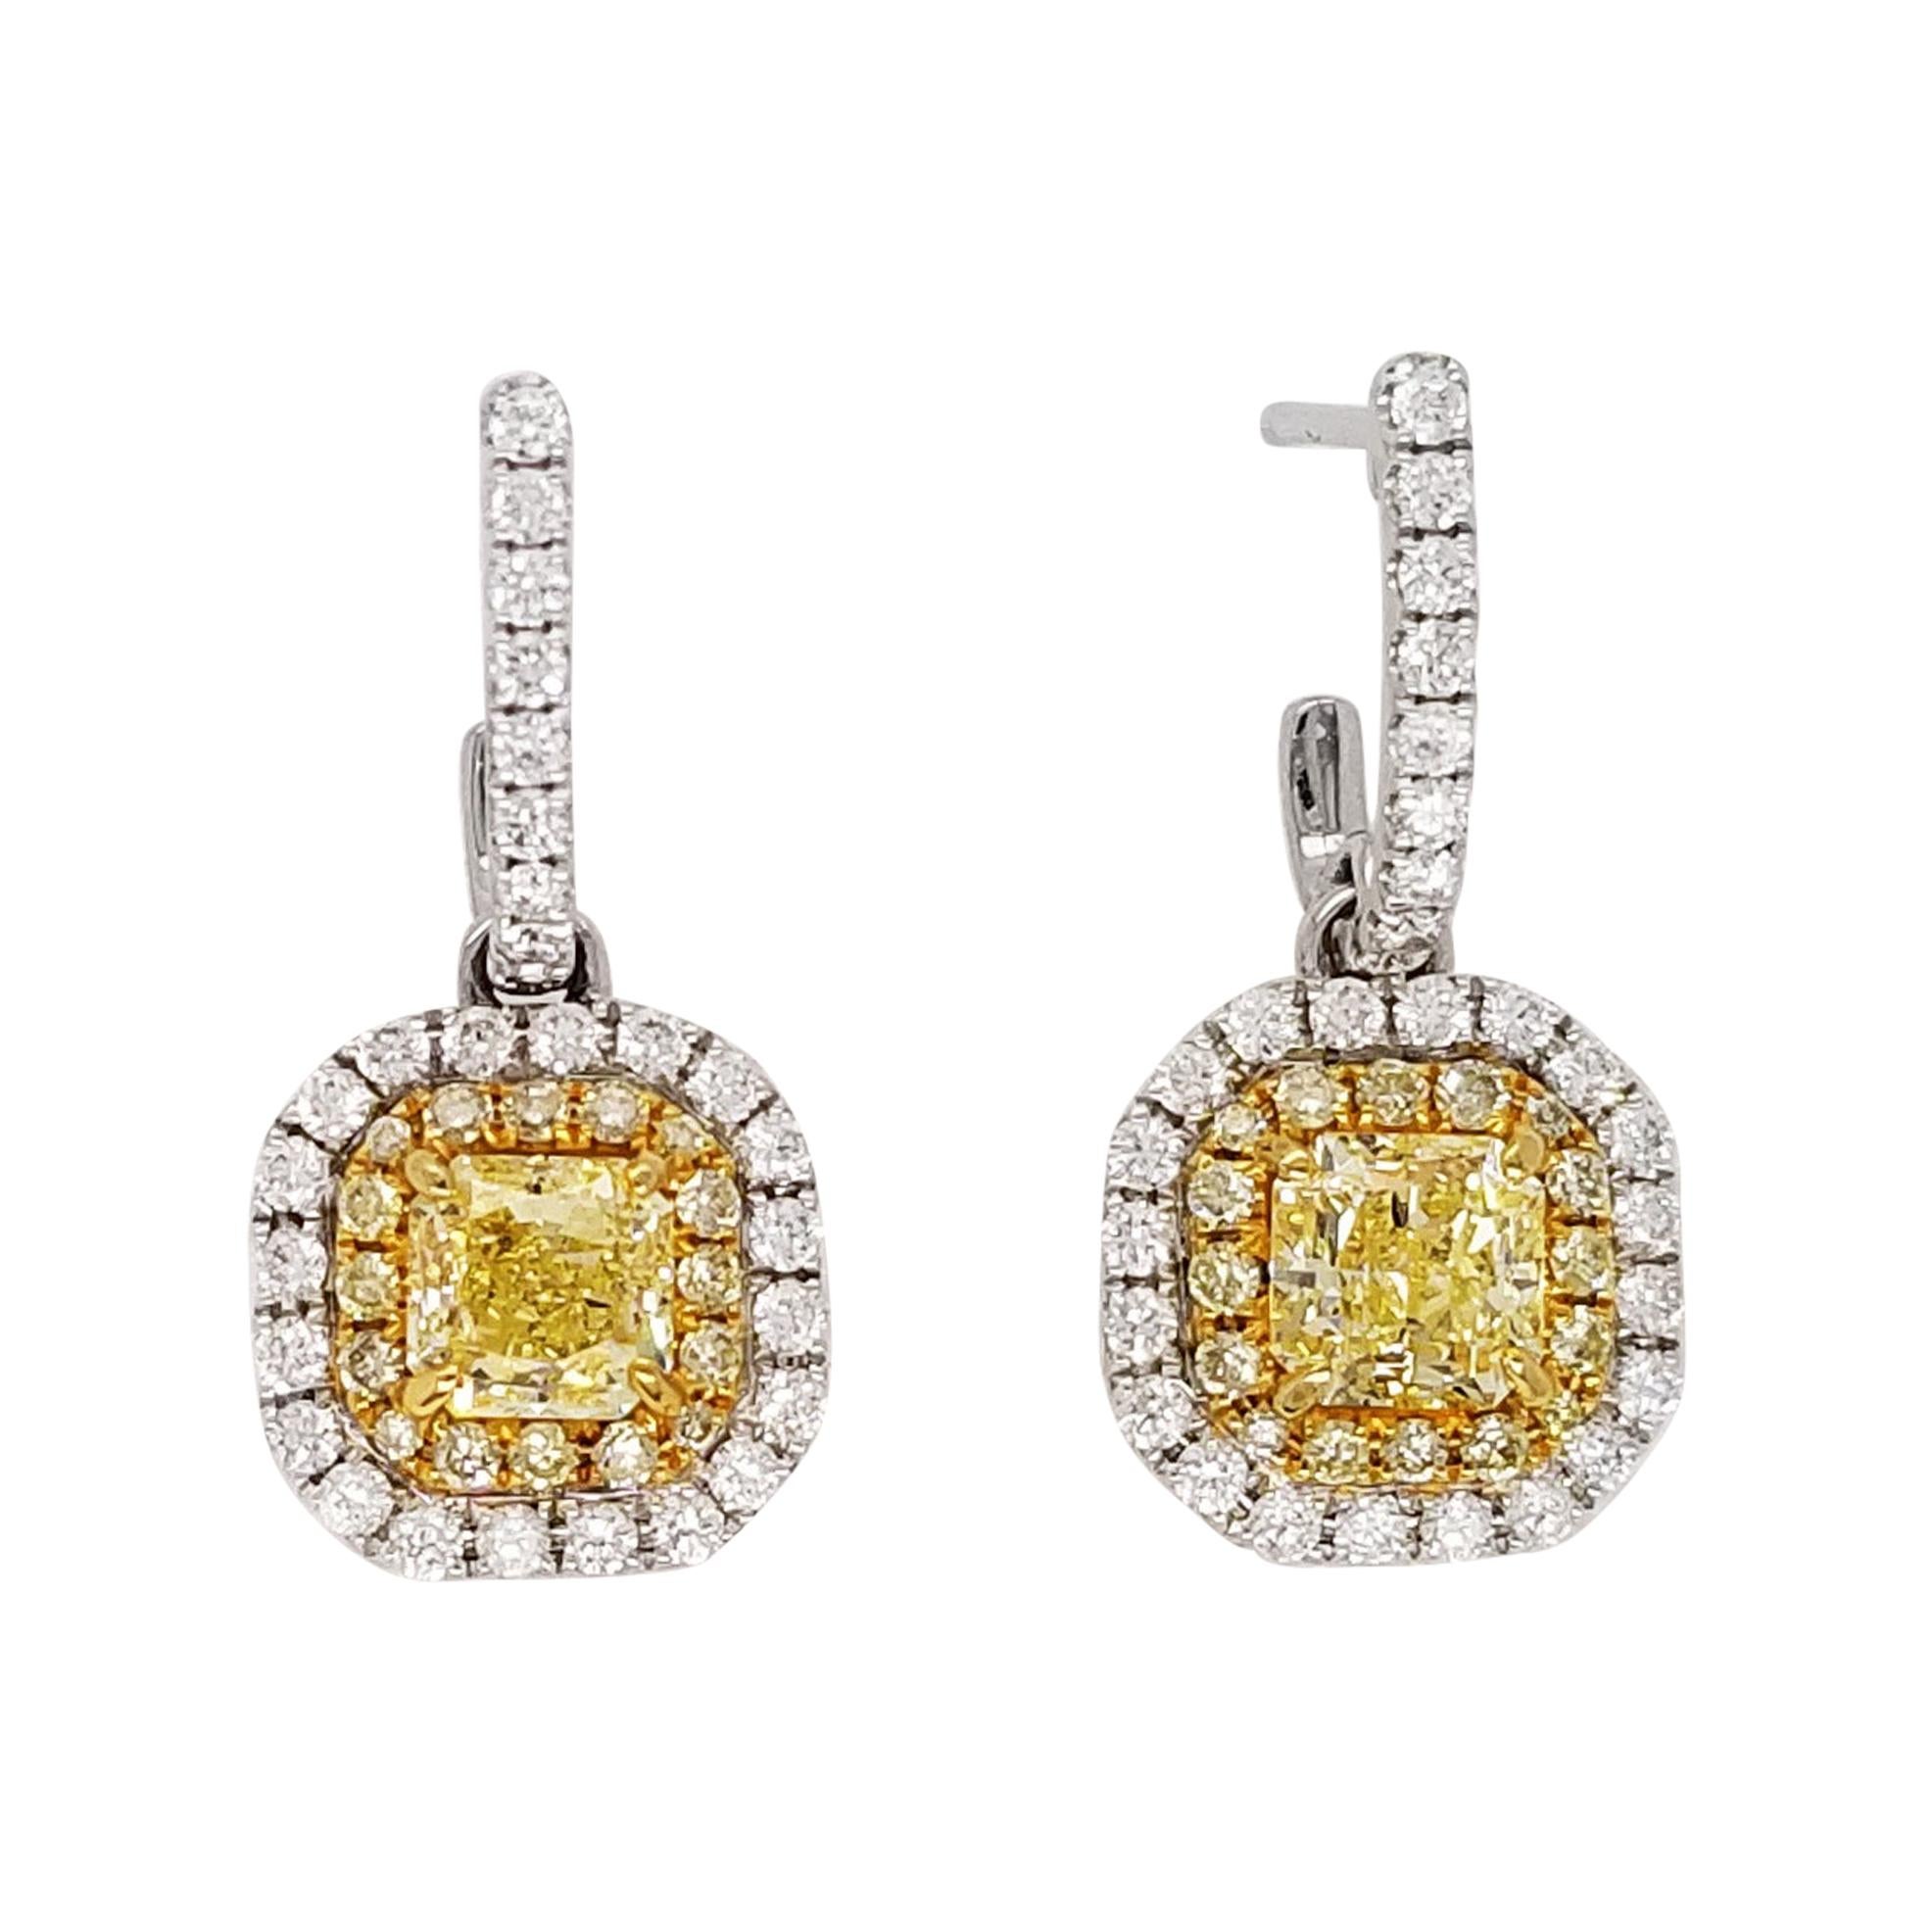 Scarselli Pendants d'oreilles en platine avec diamants jaunes élégants de 0,5 carat chacun, certifiés GIA